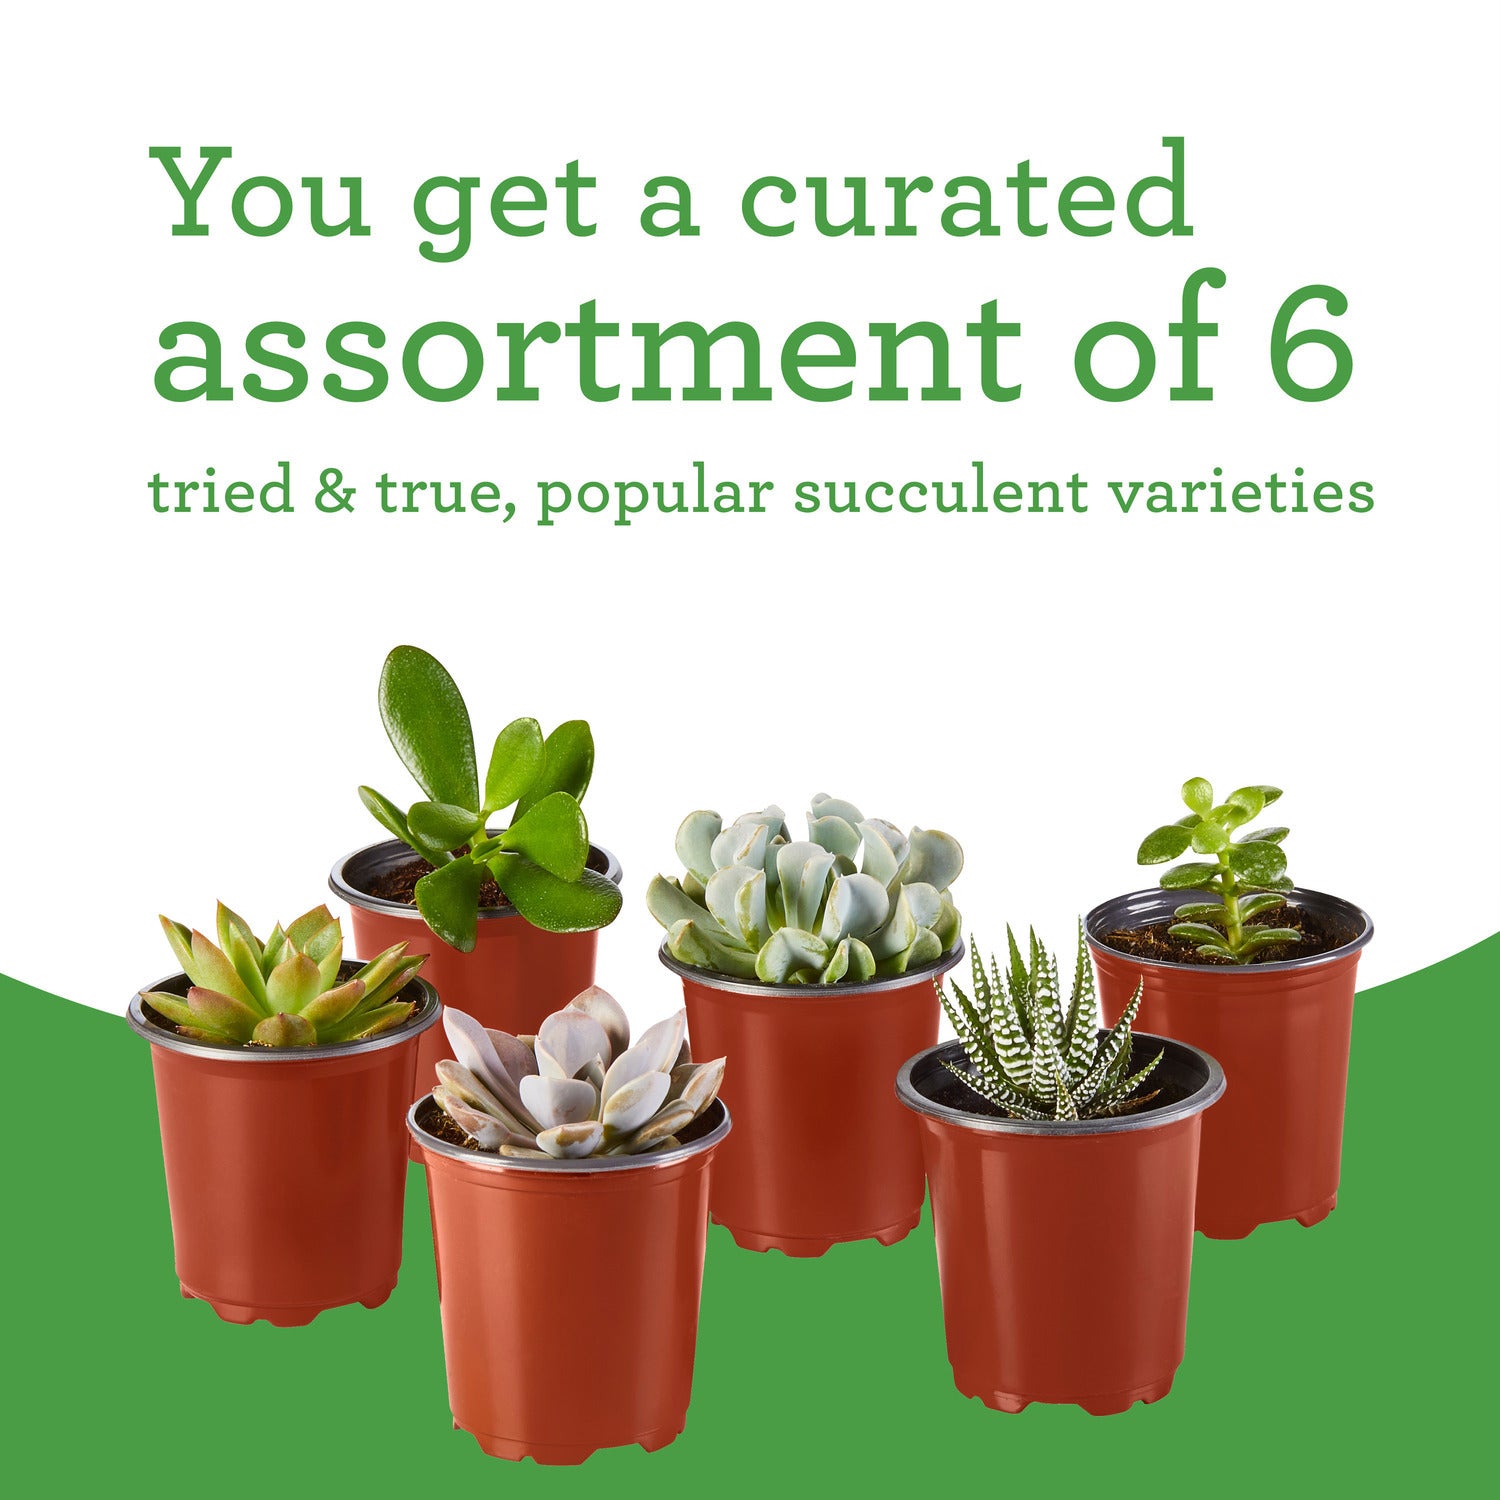 Bonnie Plants Succulent Assortment 13.2 oz., 6-Pack